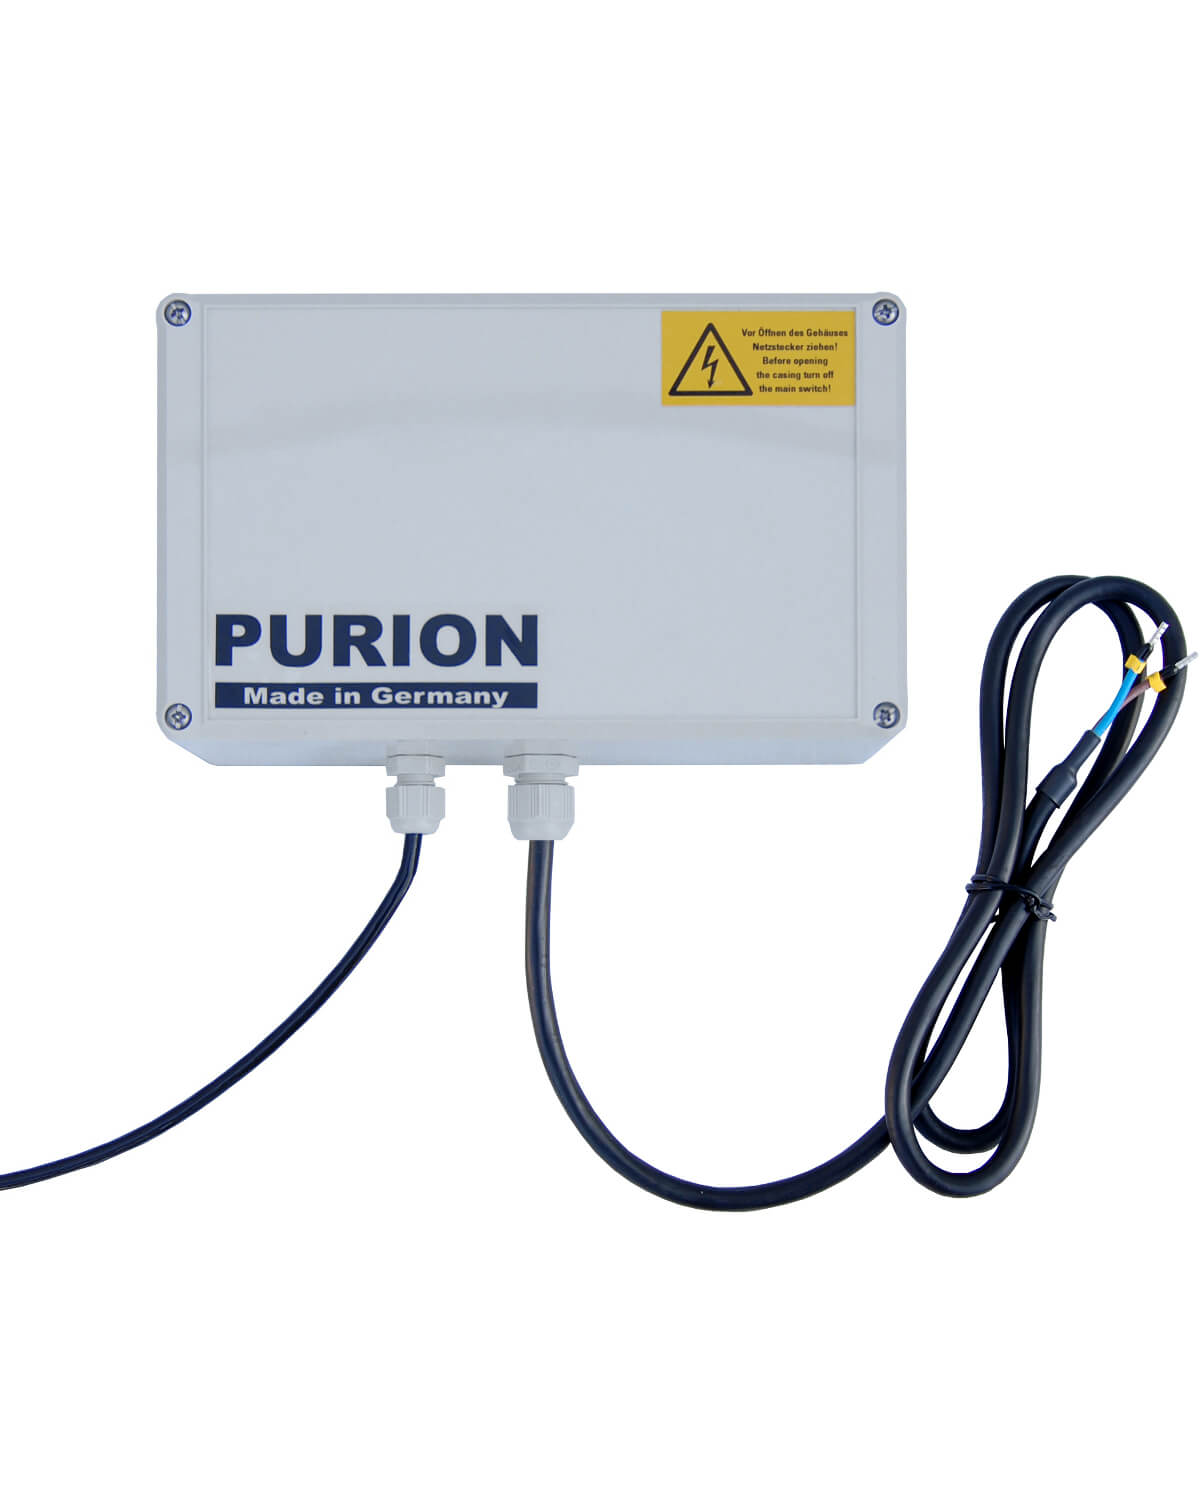 PURION 500 12 V/24 V DC Basic